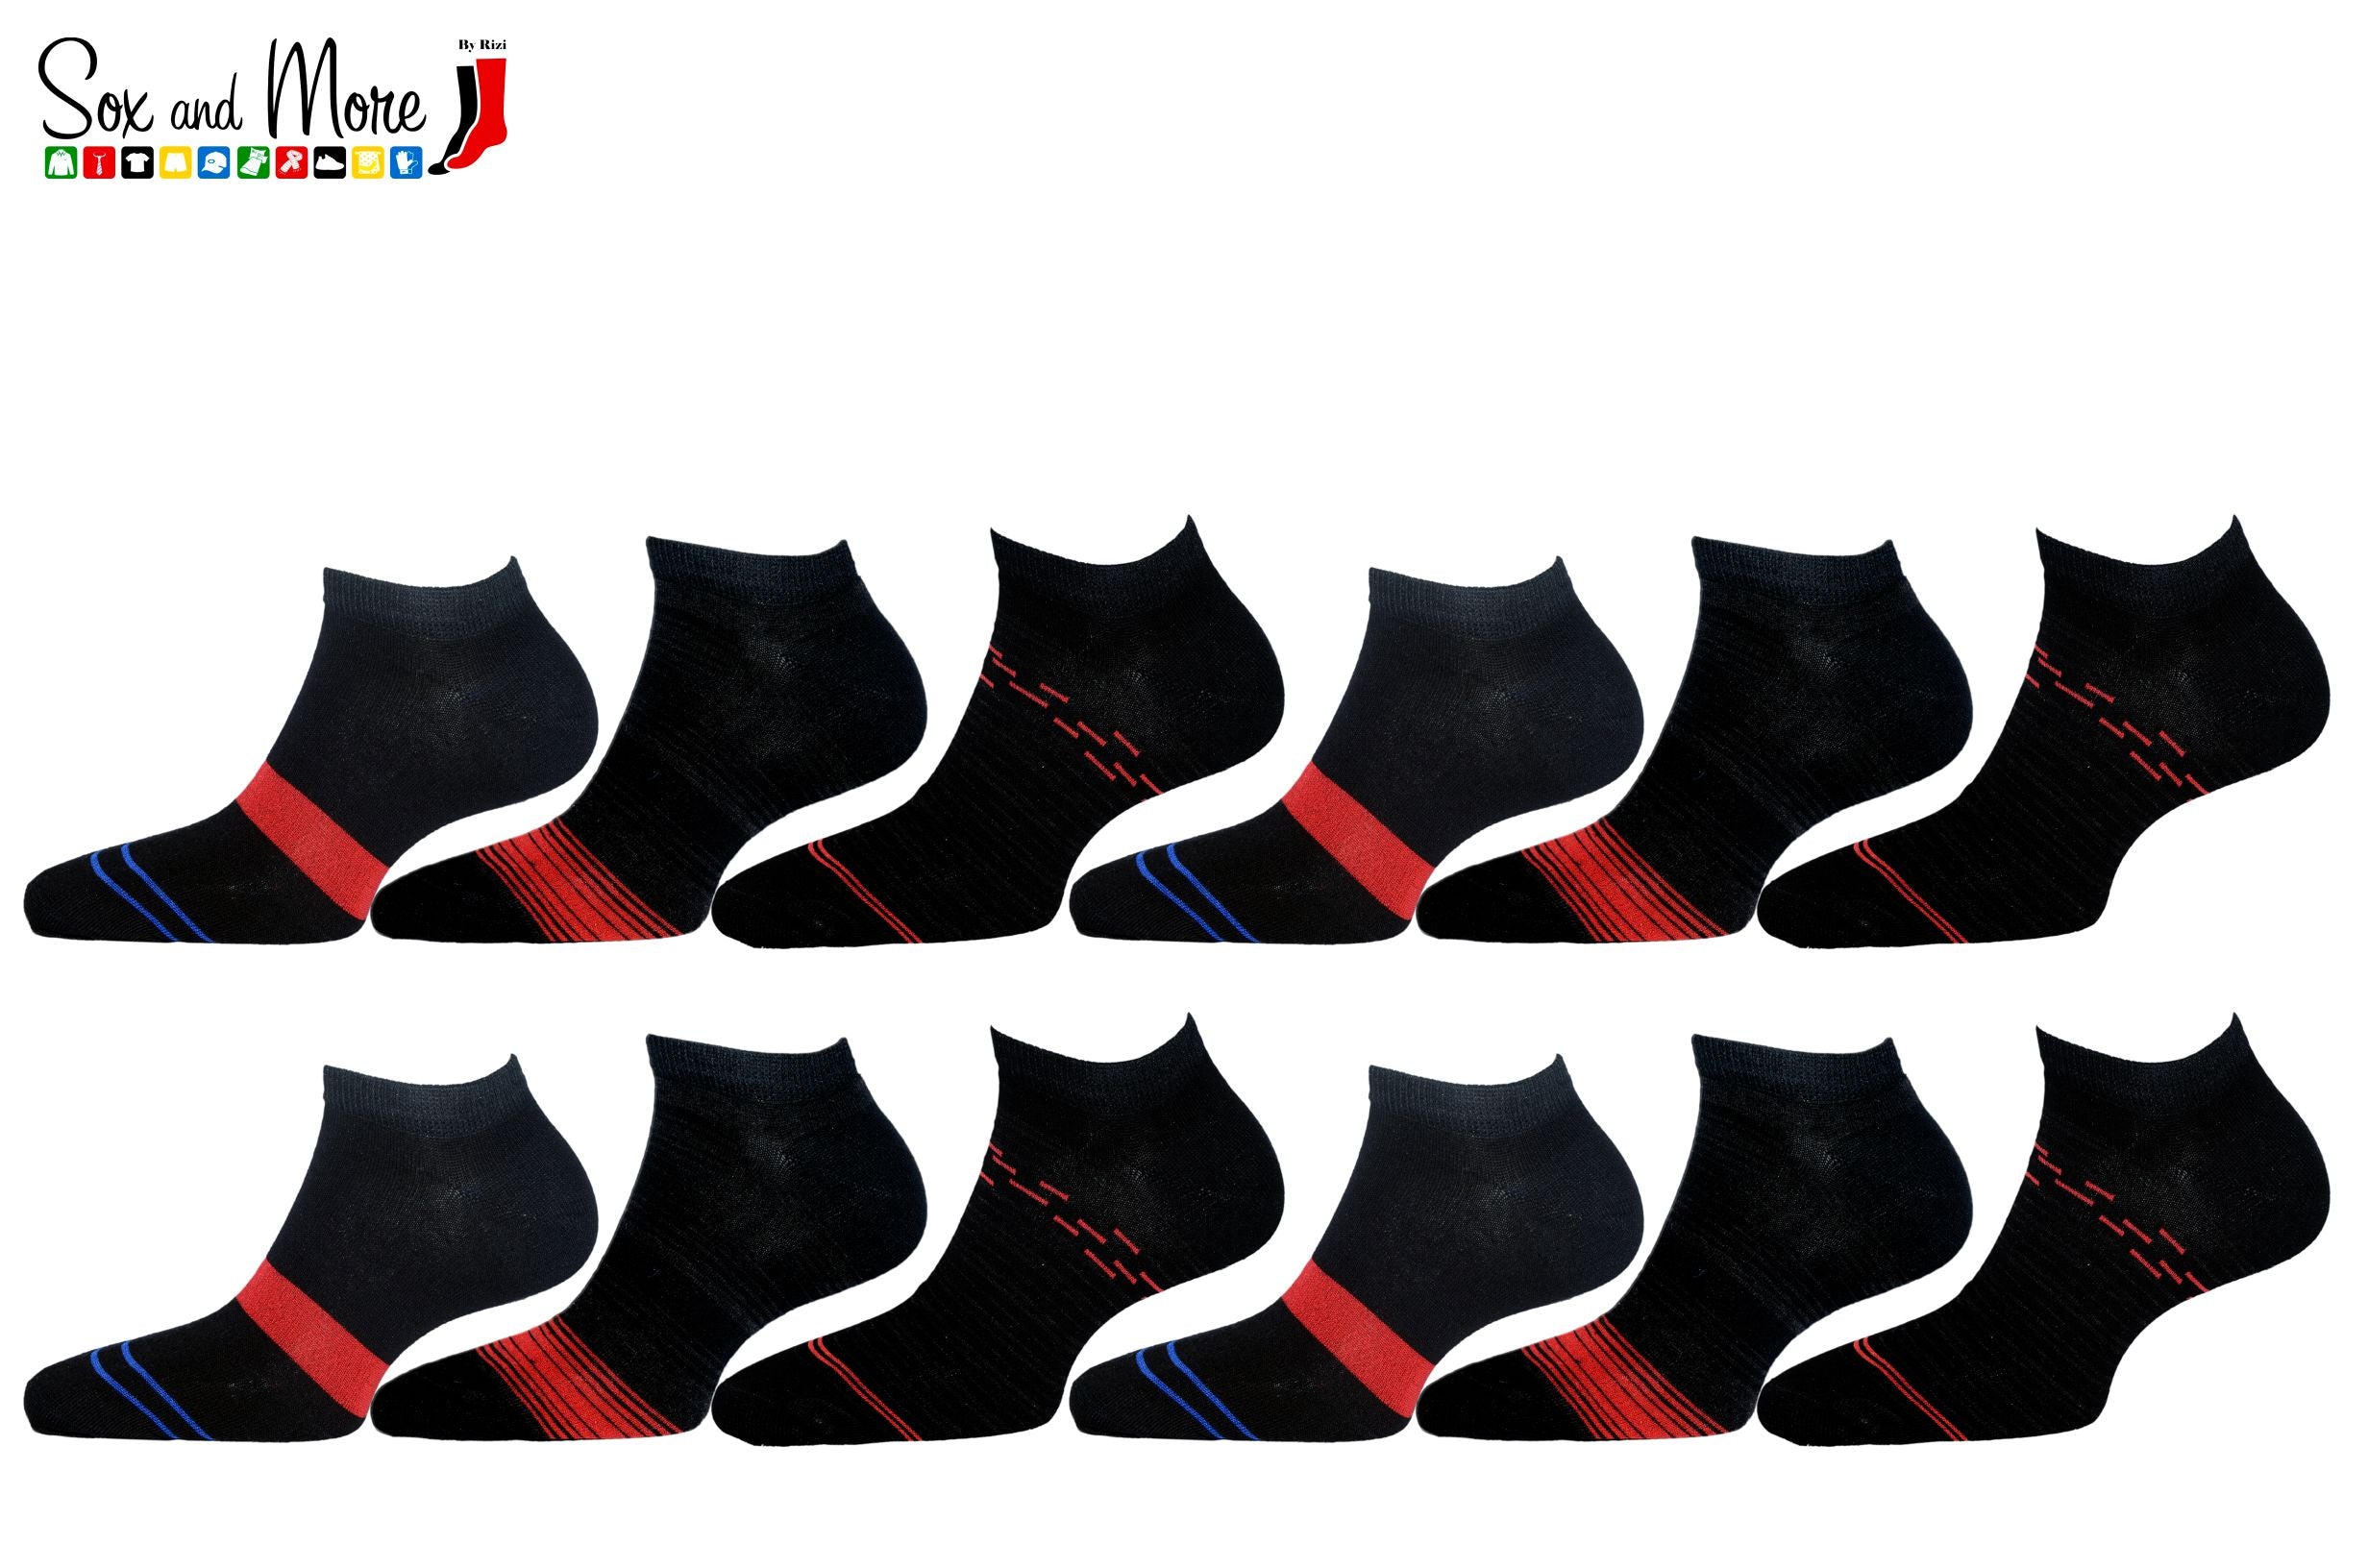 Men's Fashion Short Stripe Socks(Pack of 3)